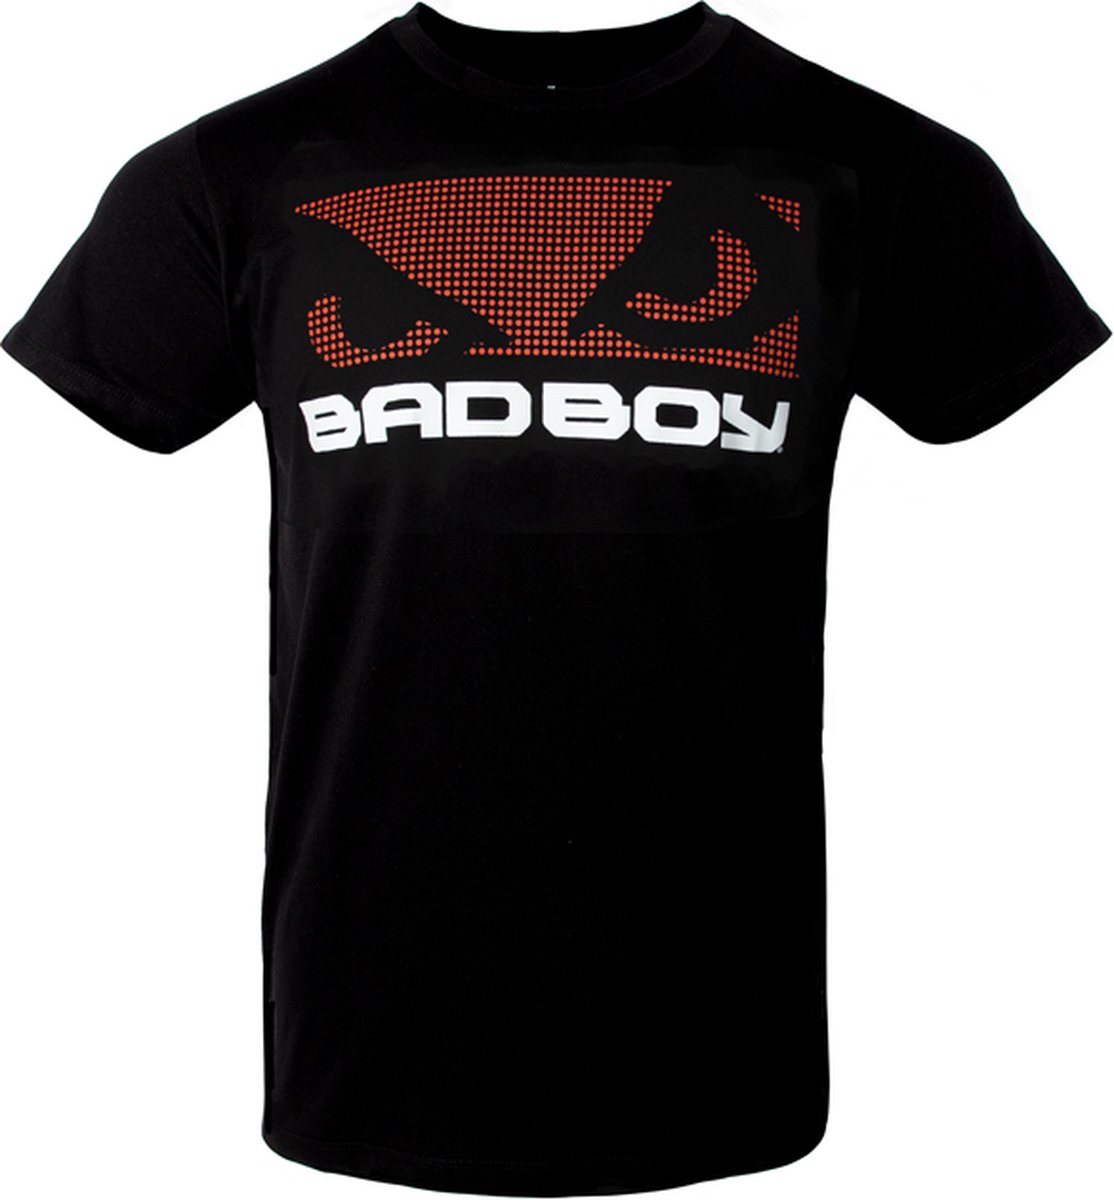 BadBoy T-Shirt Zwart/Rood Textured Large